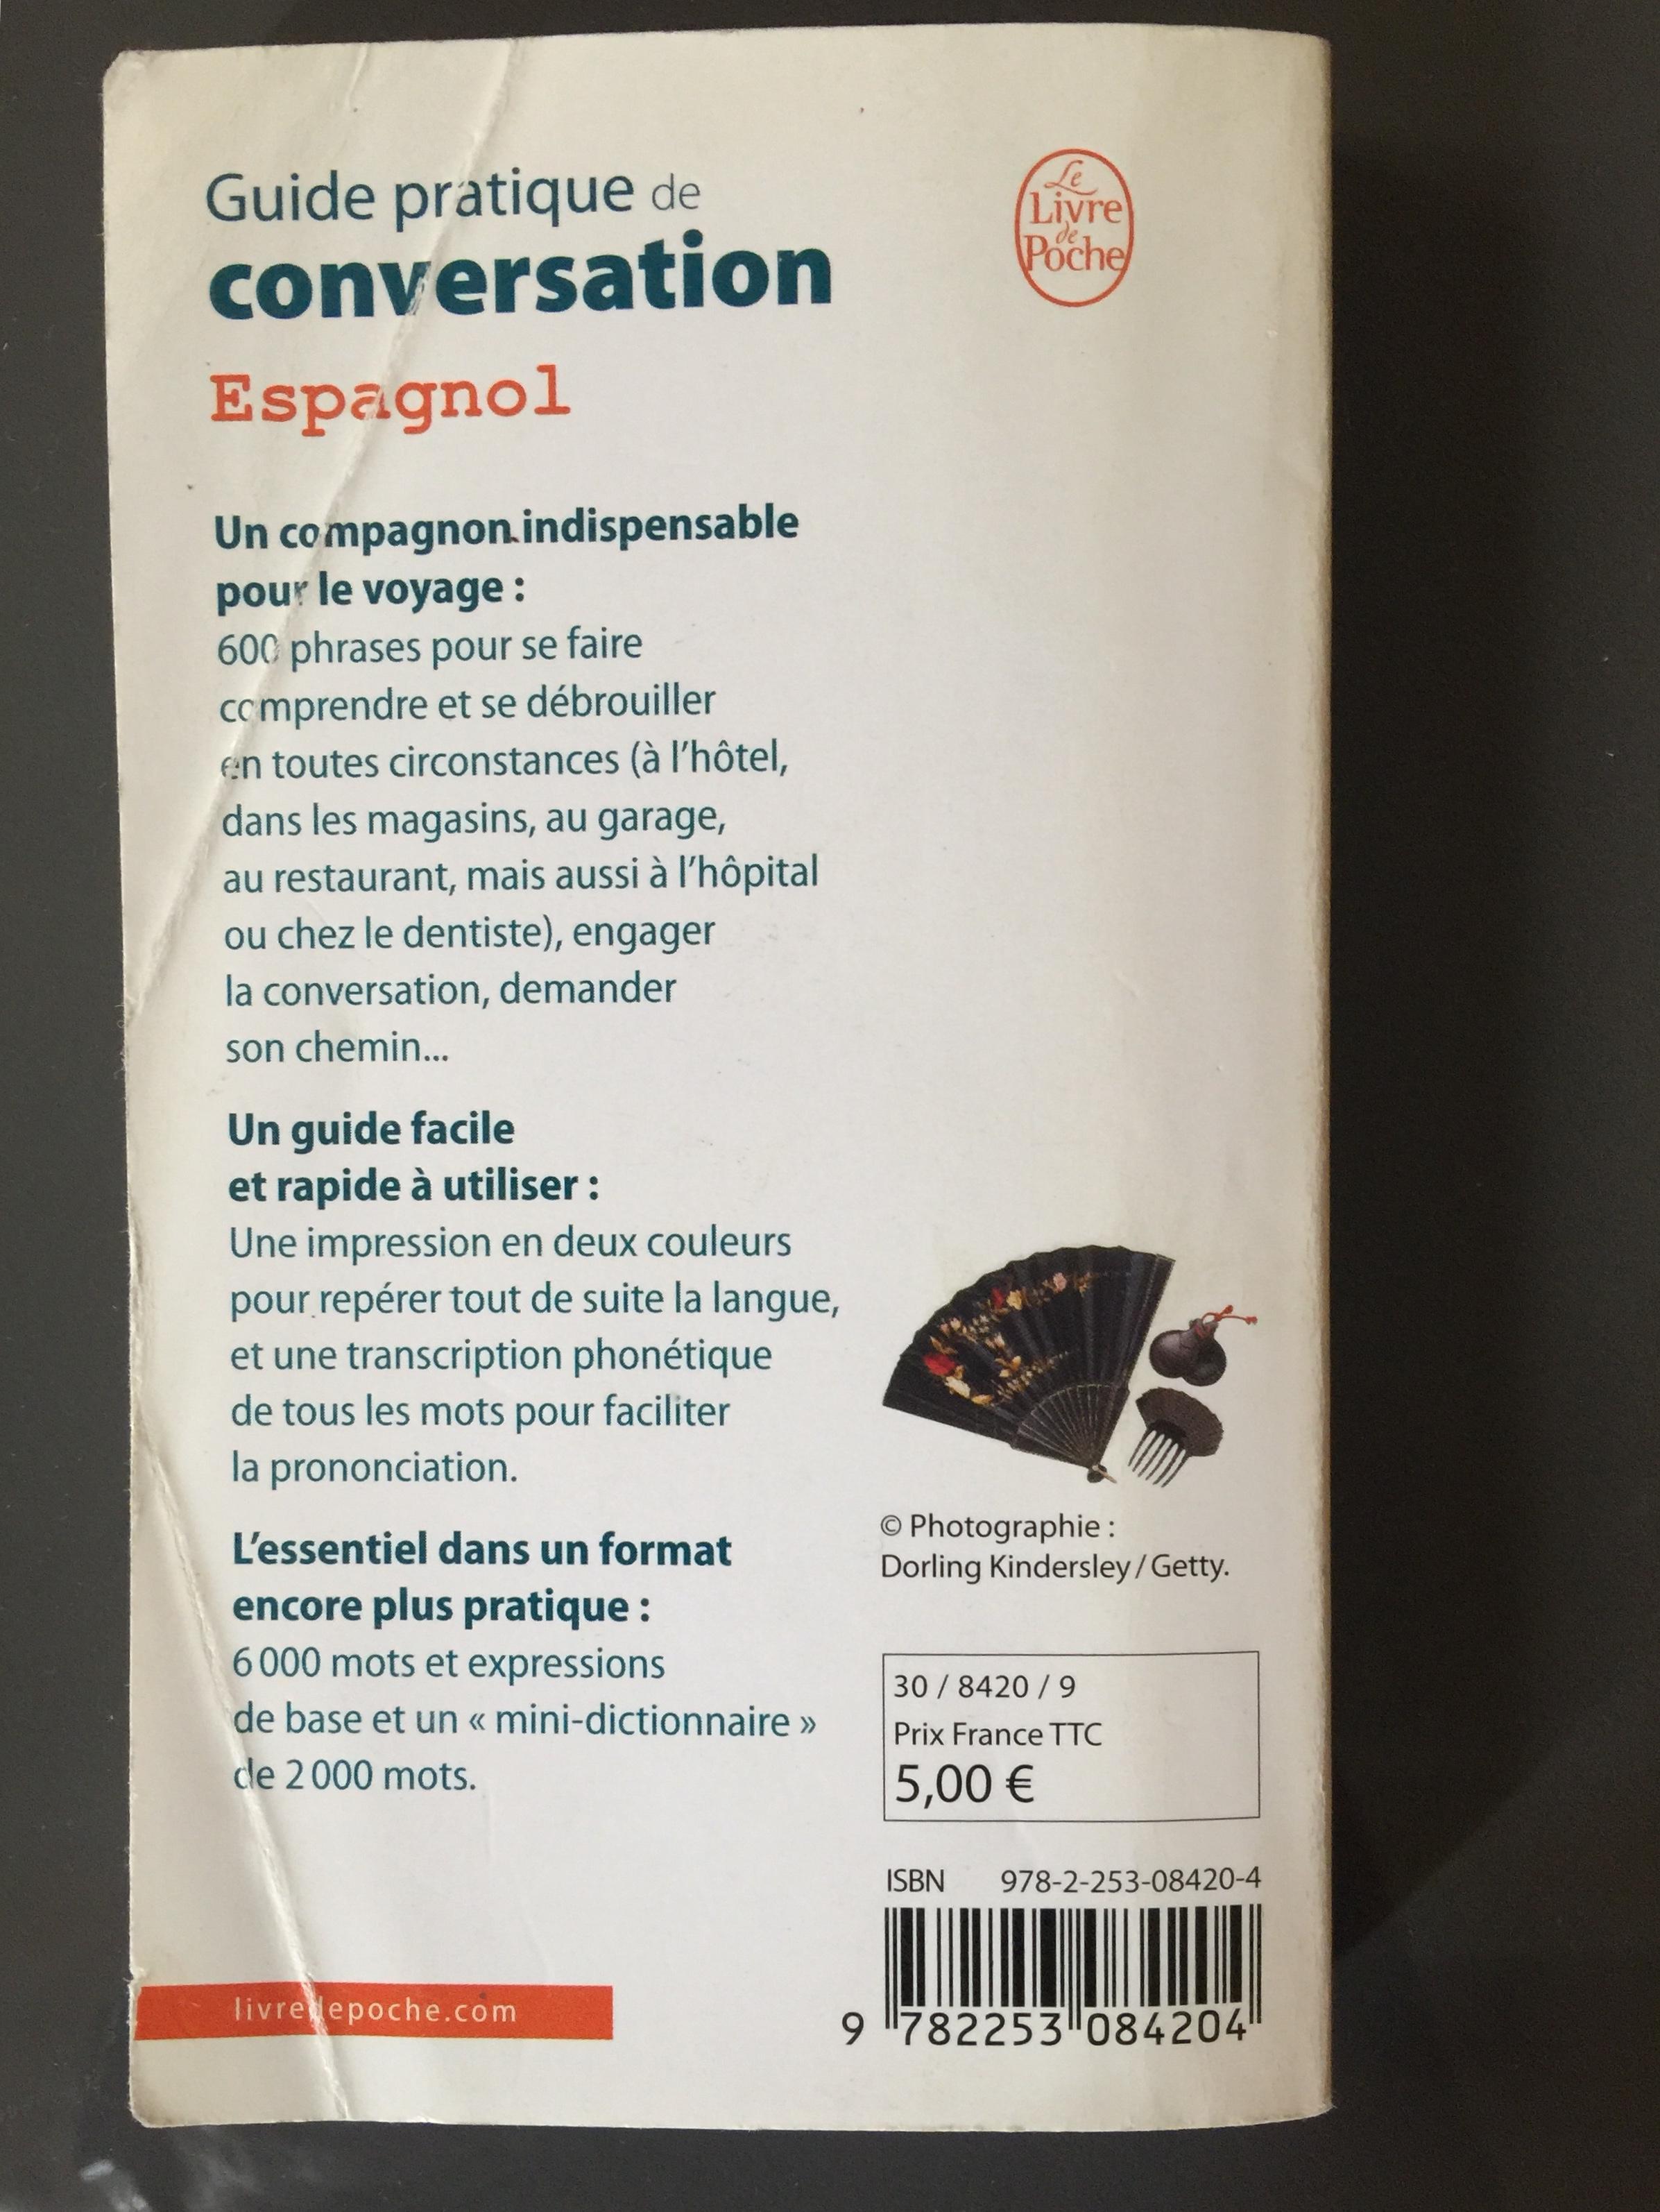 troc de troc guide de conversation espagnole image 1